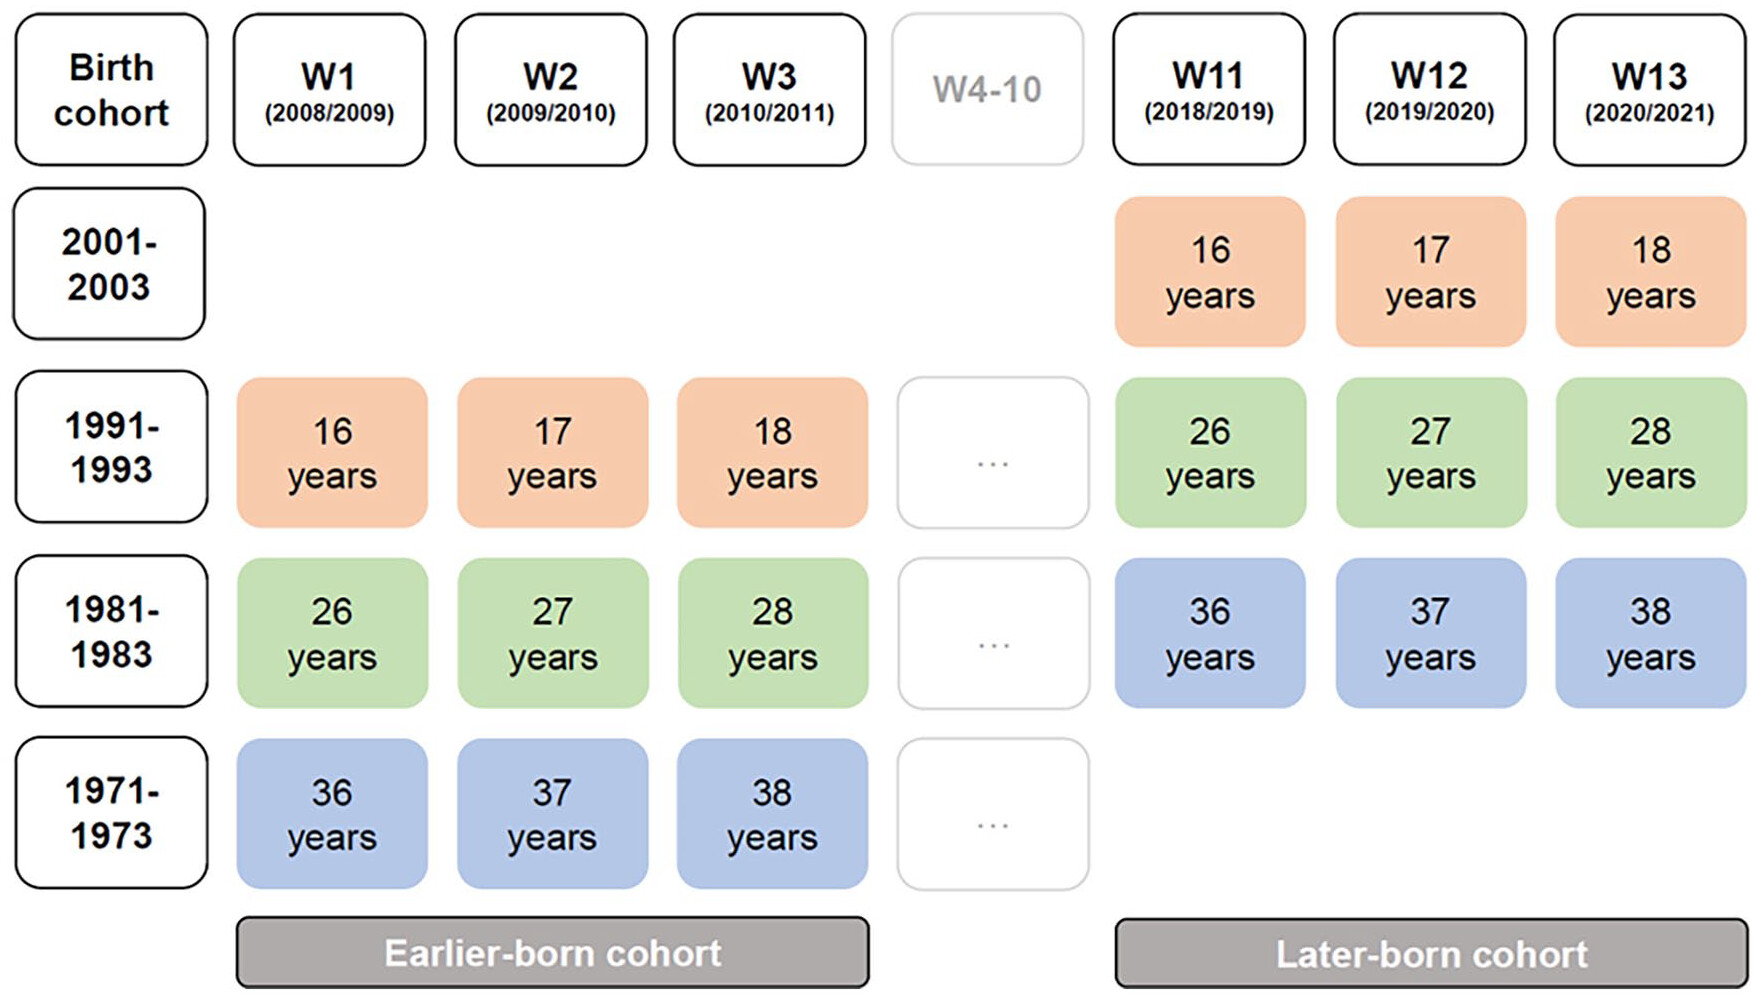 調査期間と参加者の年齢をまとめた図